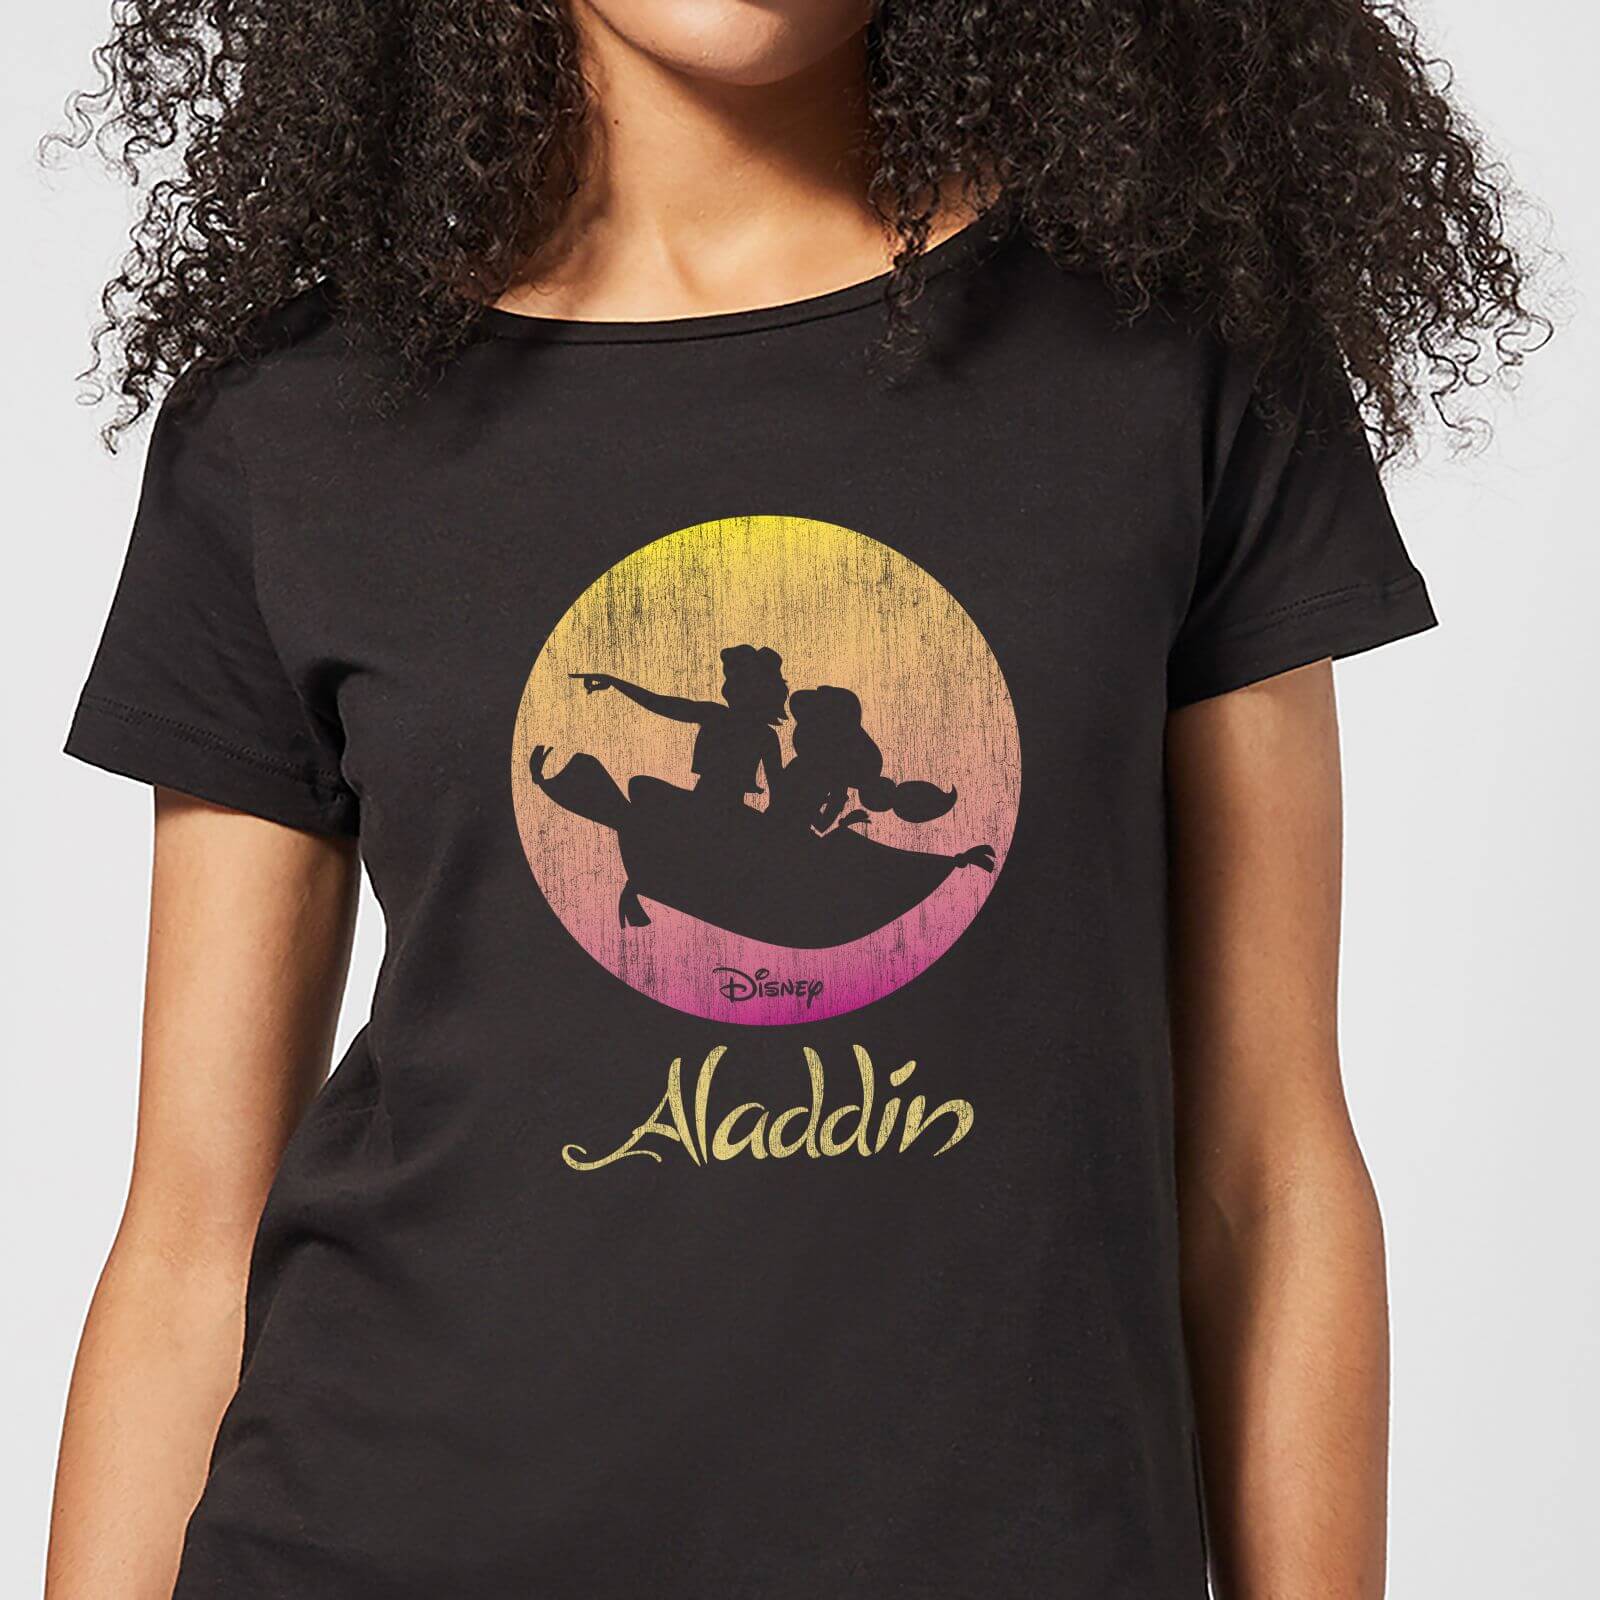 Disney Aladdin Flying Sunset Women's T-Shirt - Black - S